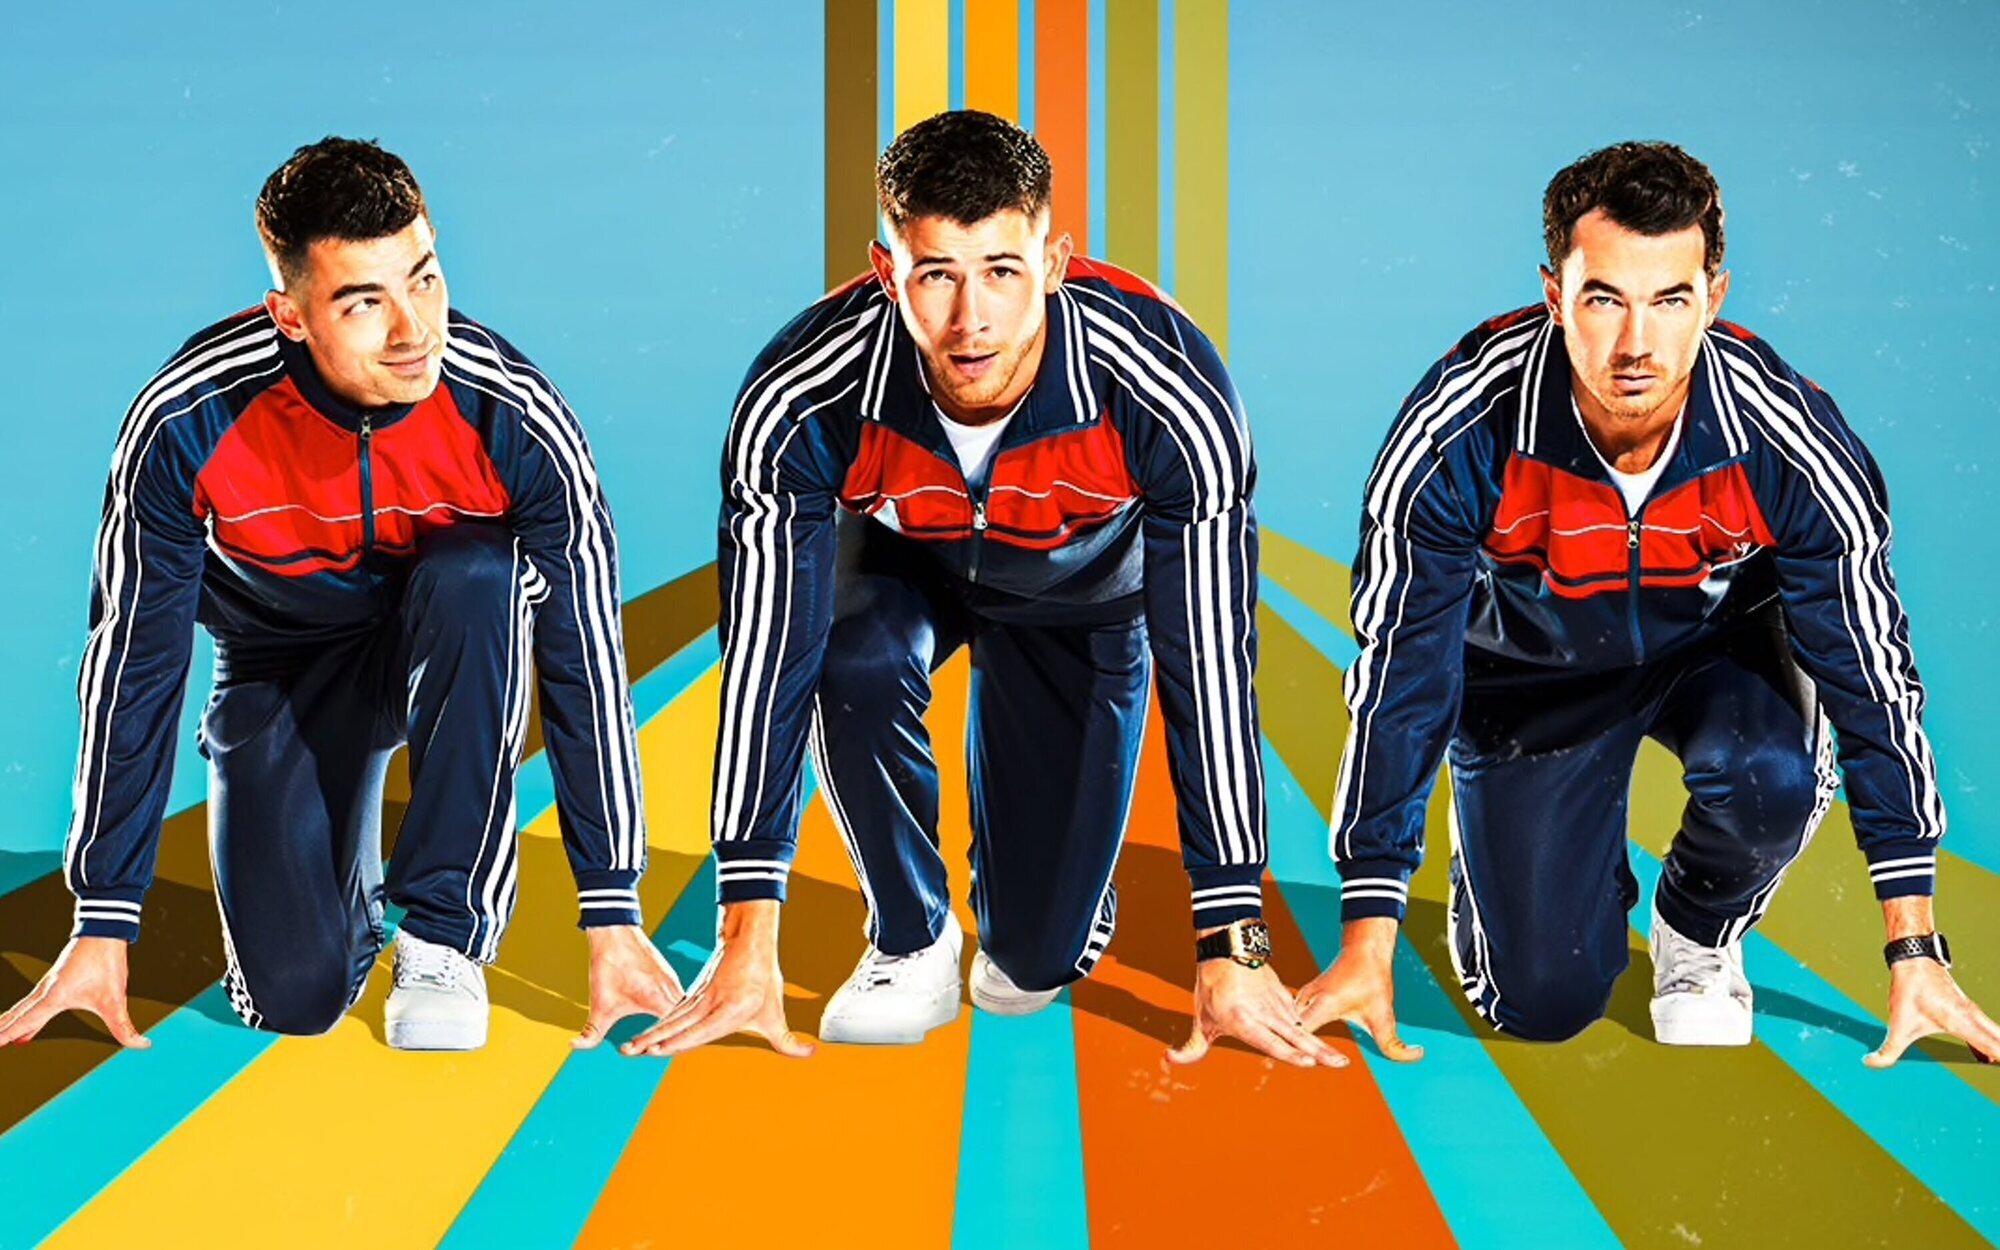 'Olympic Dreams Featuring Jonas Brothers' no puede arrebatar el liderazgo a 'Big Brother'